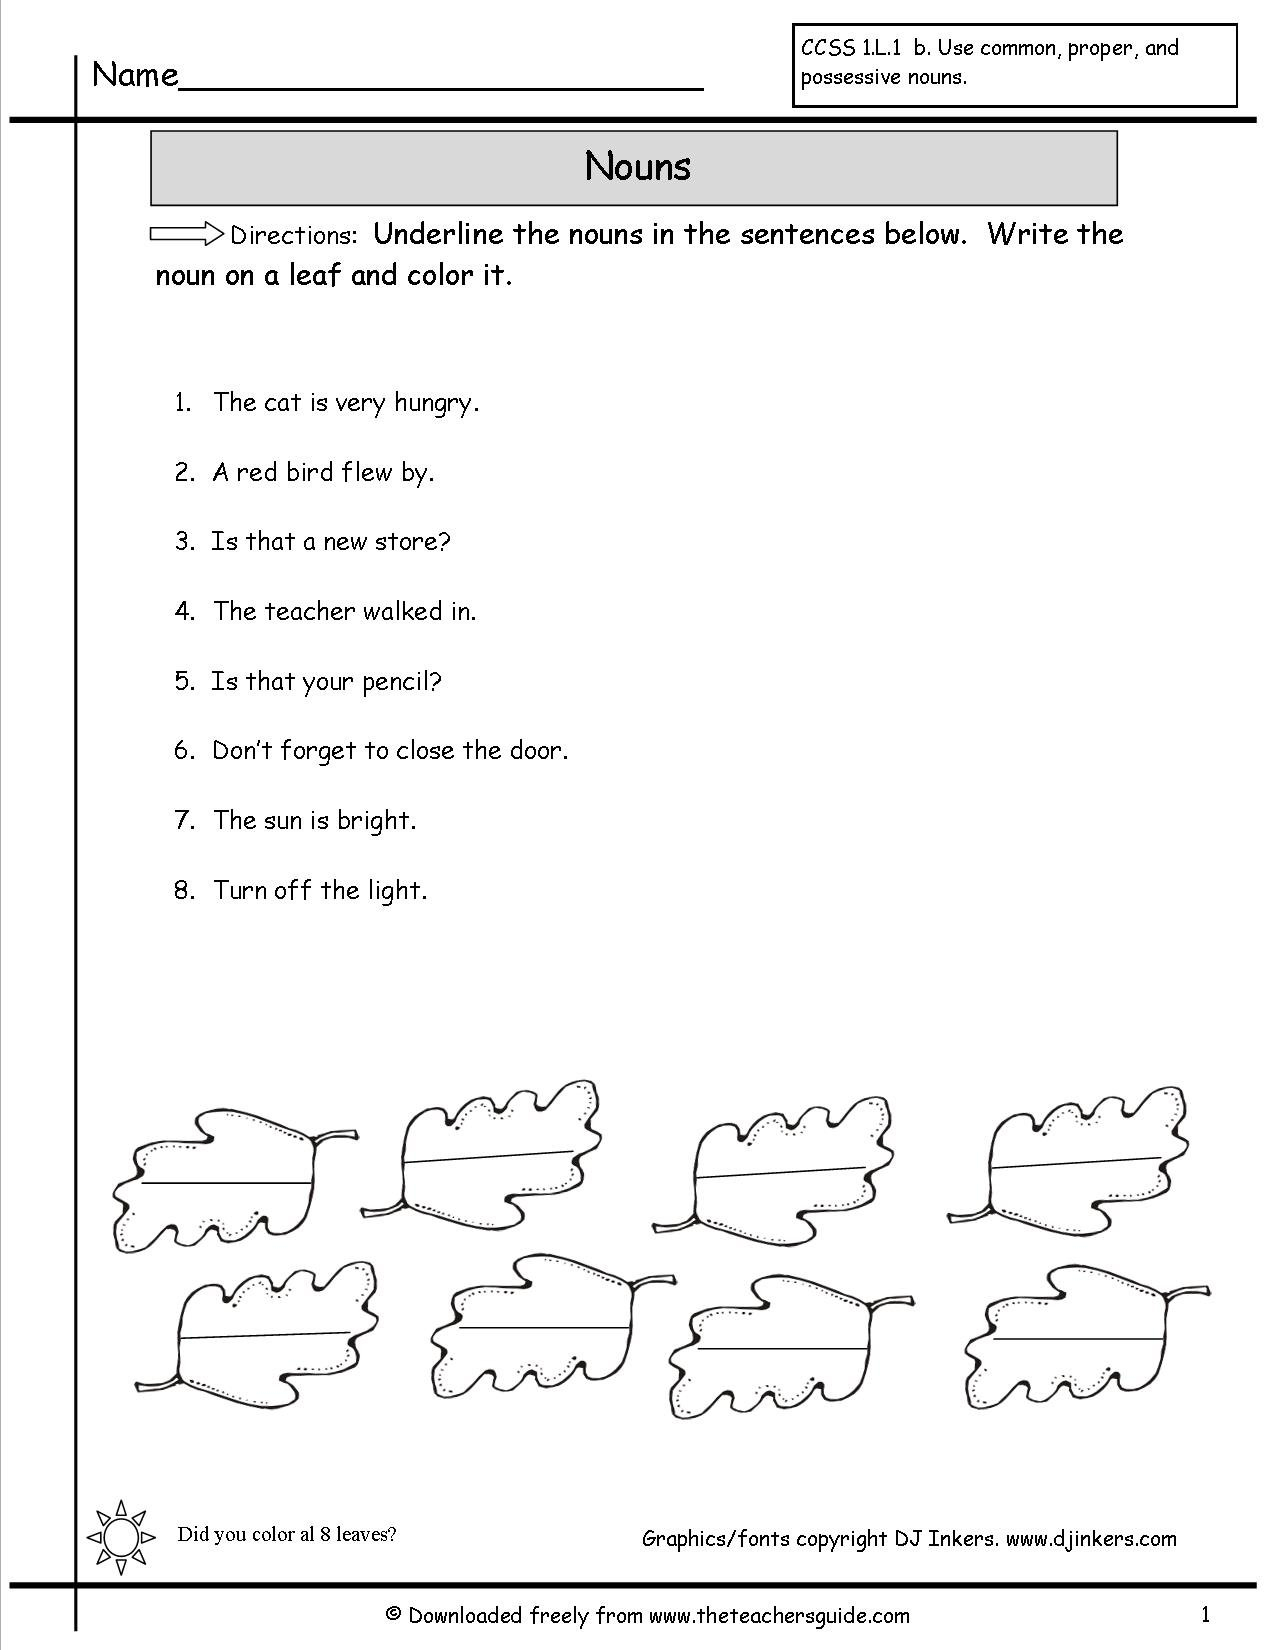 Nouns Worksheets From The Teacher's Guide Regarding Noun Worksheets For Kindergarten